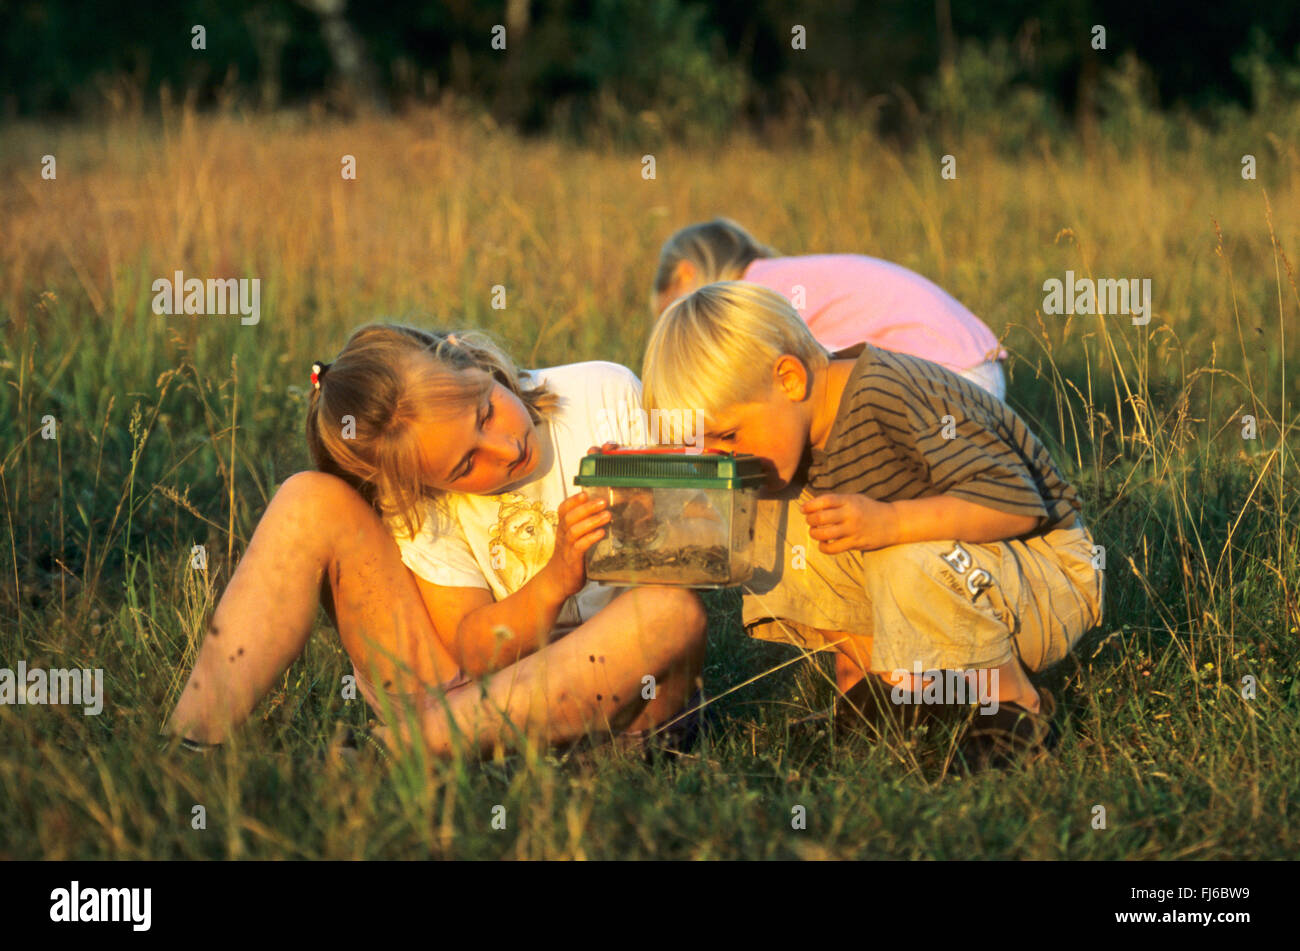 Los niños viendo atrapados los saltamontes, Alemania Foto de stock